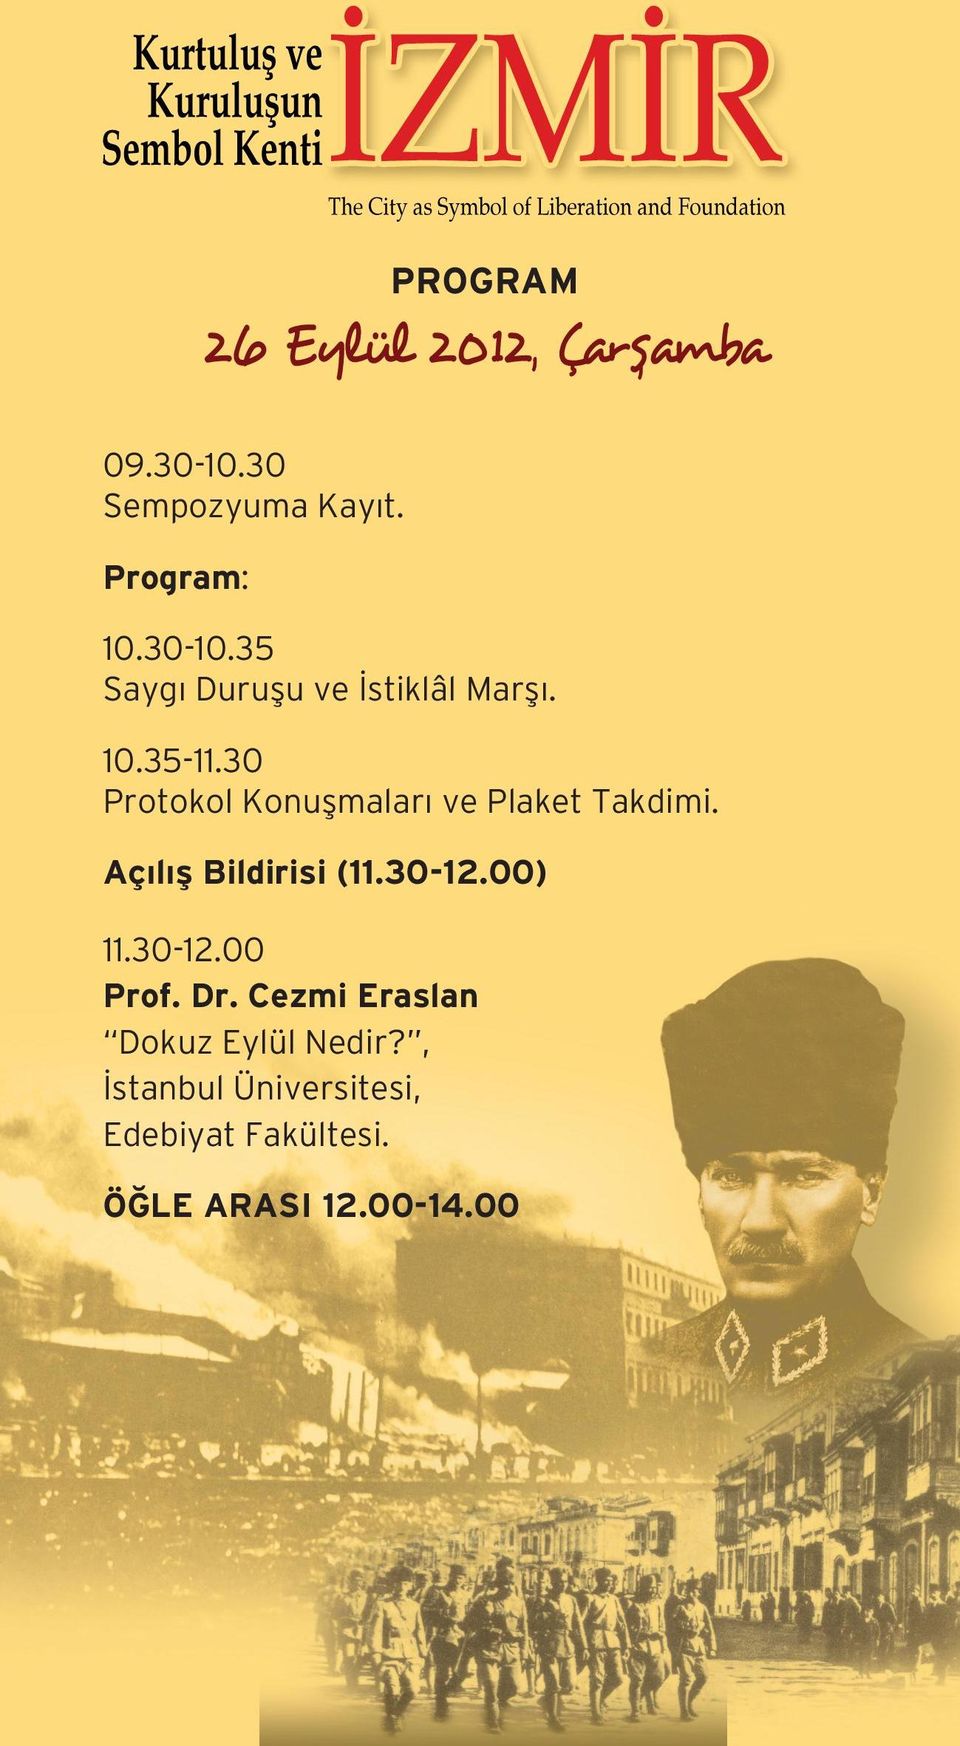 00) 11.30-12.00 Prof. Dr. Cezmi Eraslan Dokuz Eylül Nedir?